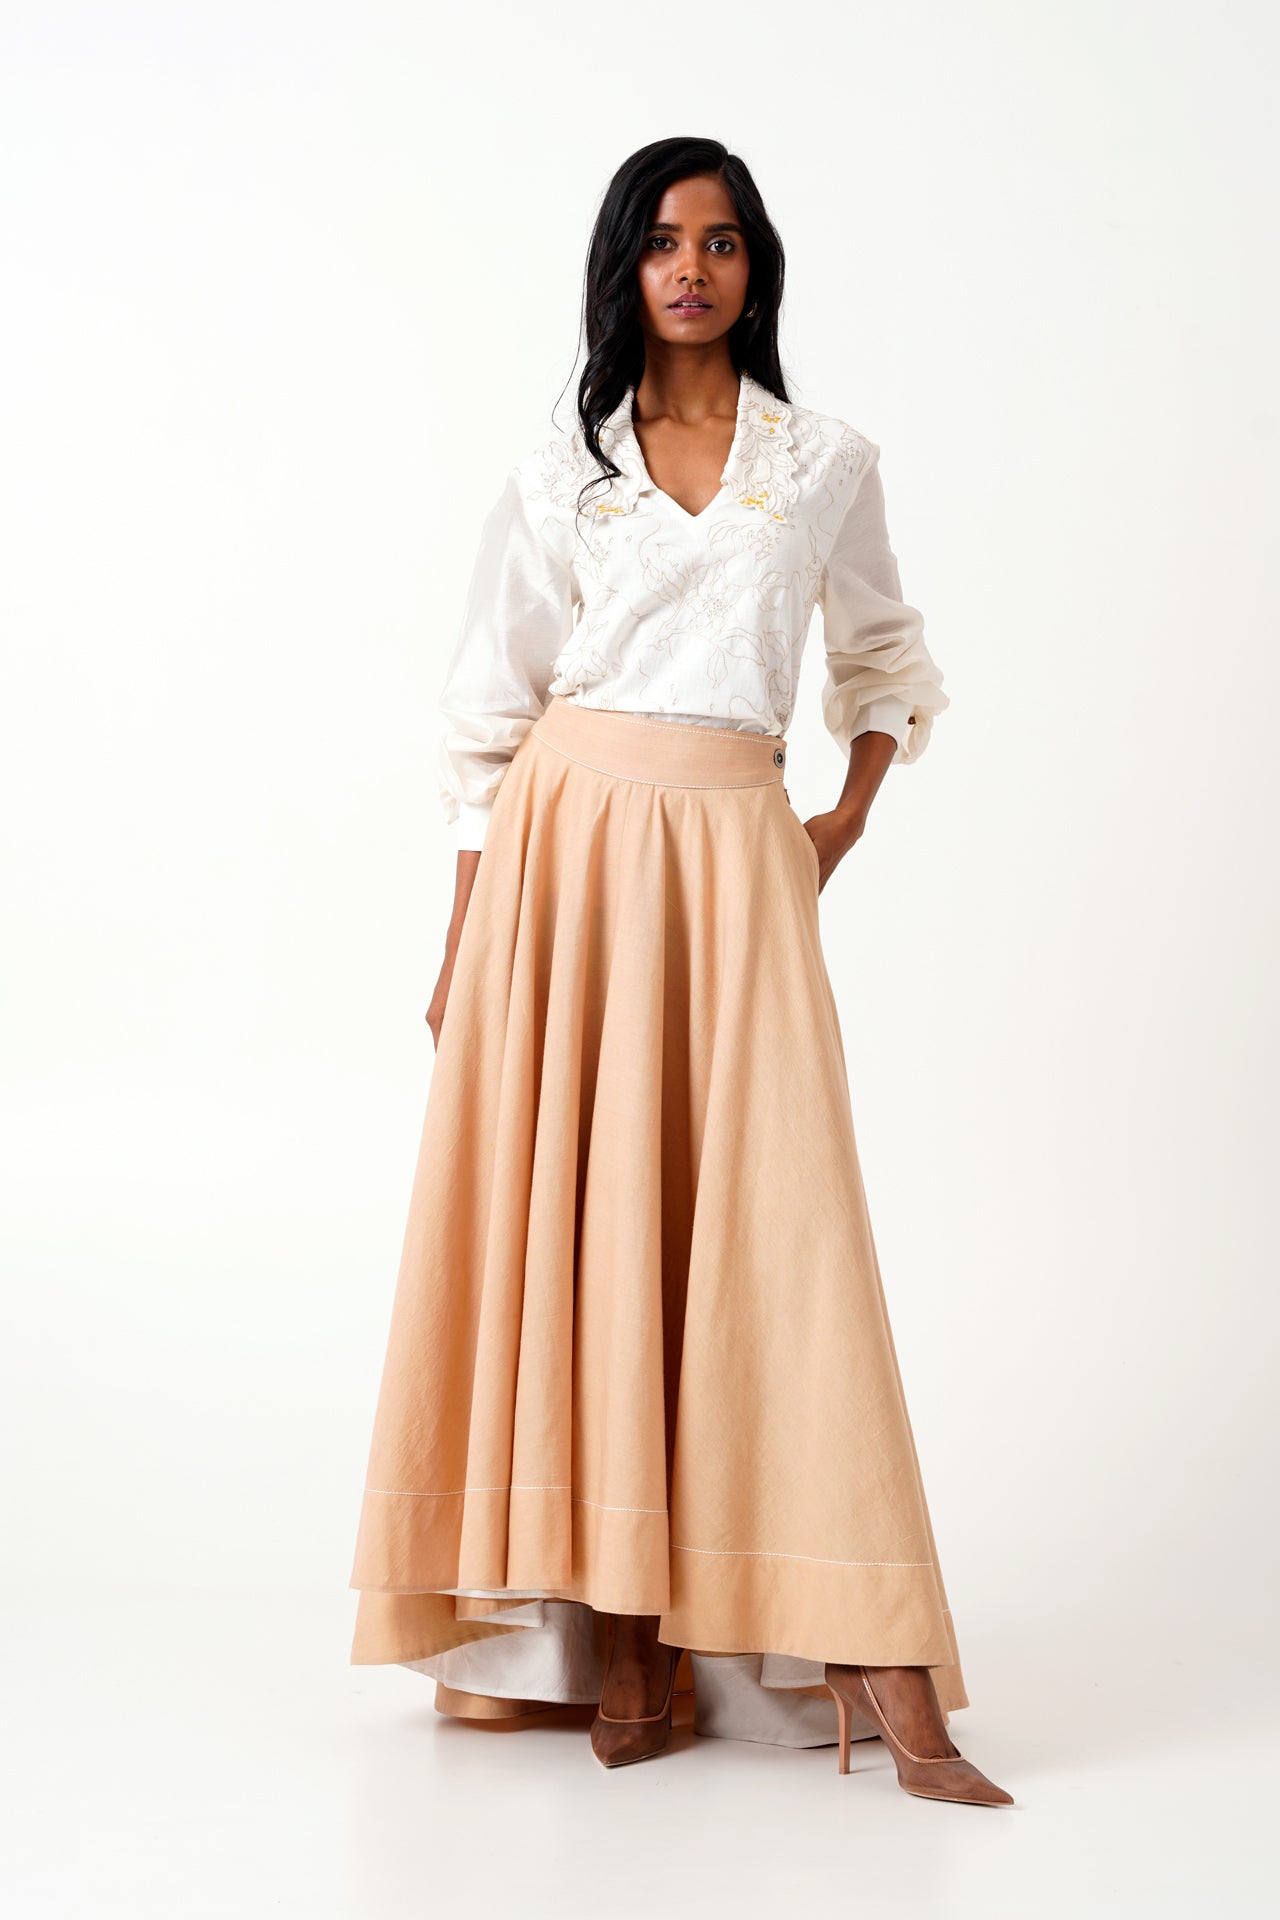 Latte Jena - Swirl Skirt Set of 2